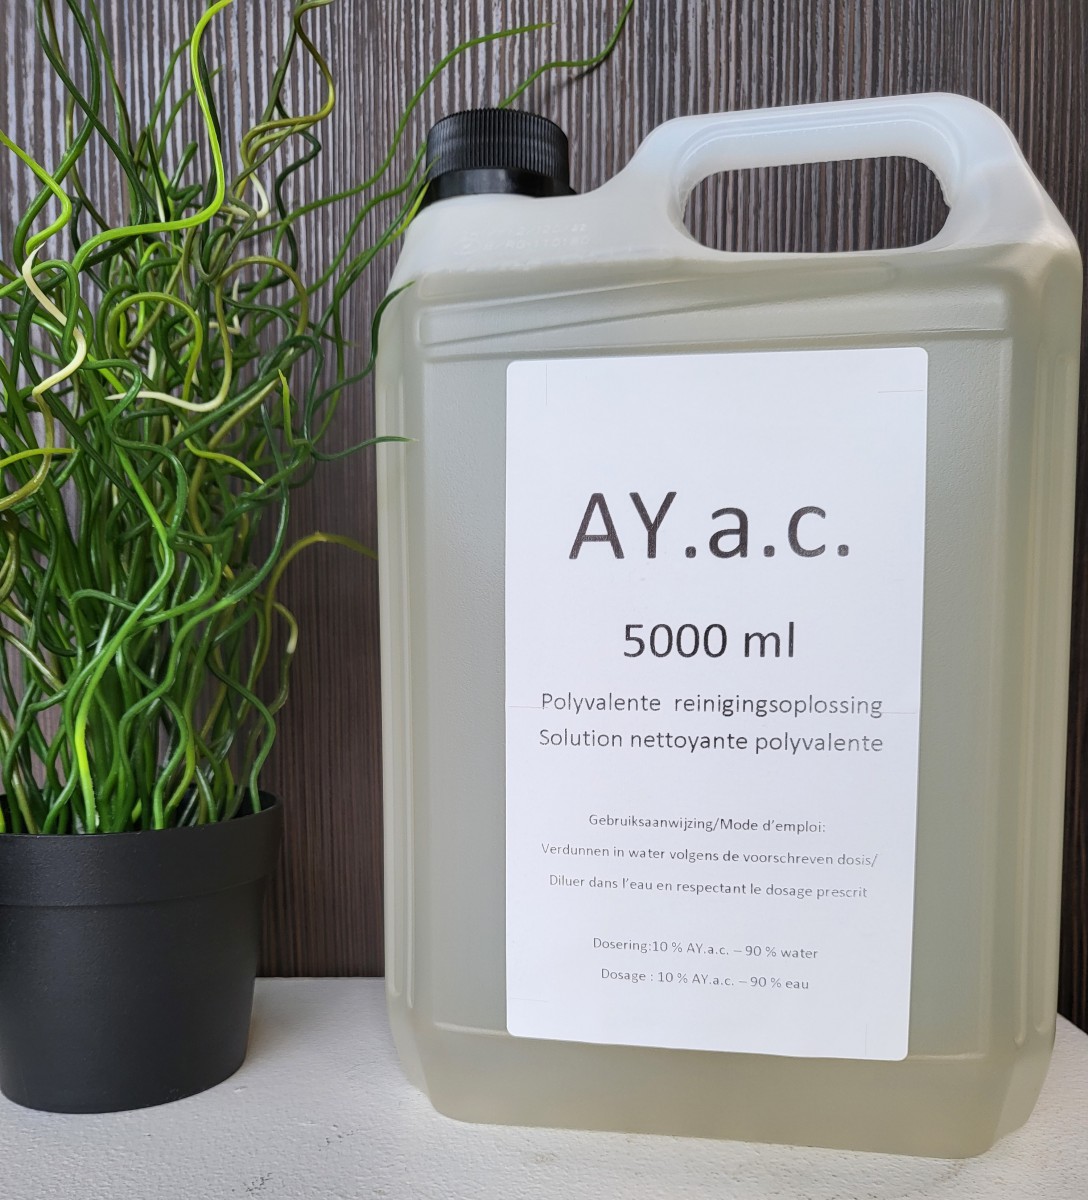 ay.a.c. 5000 ml